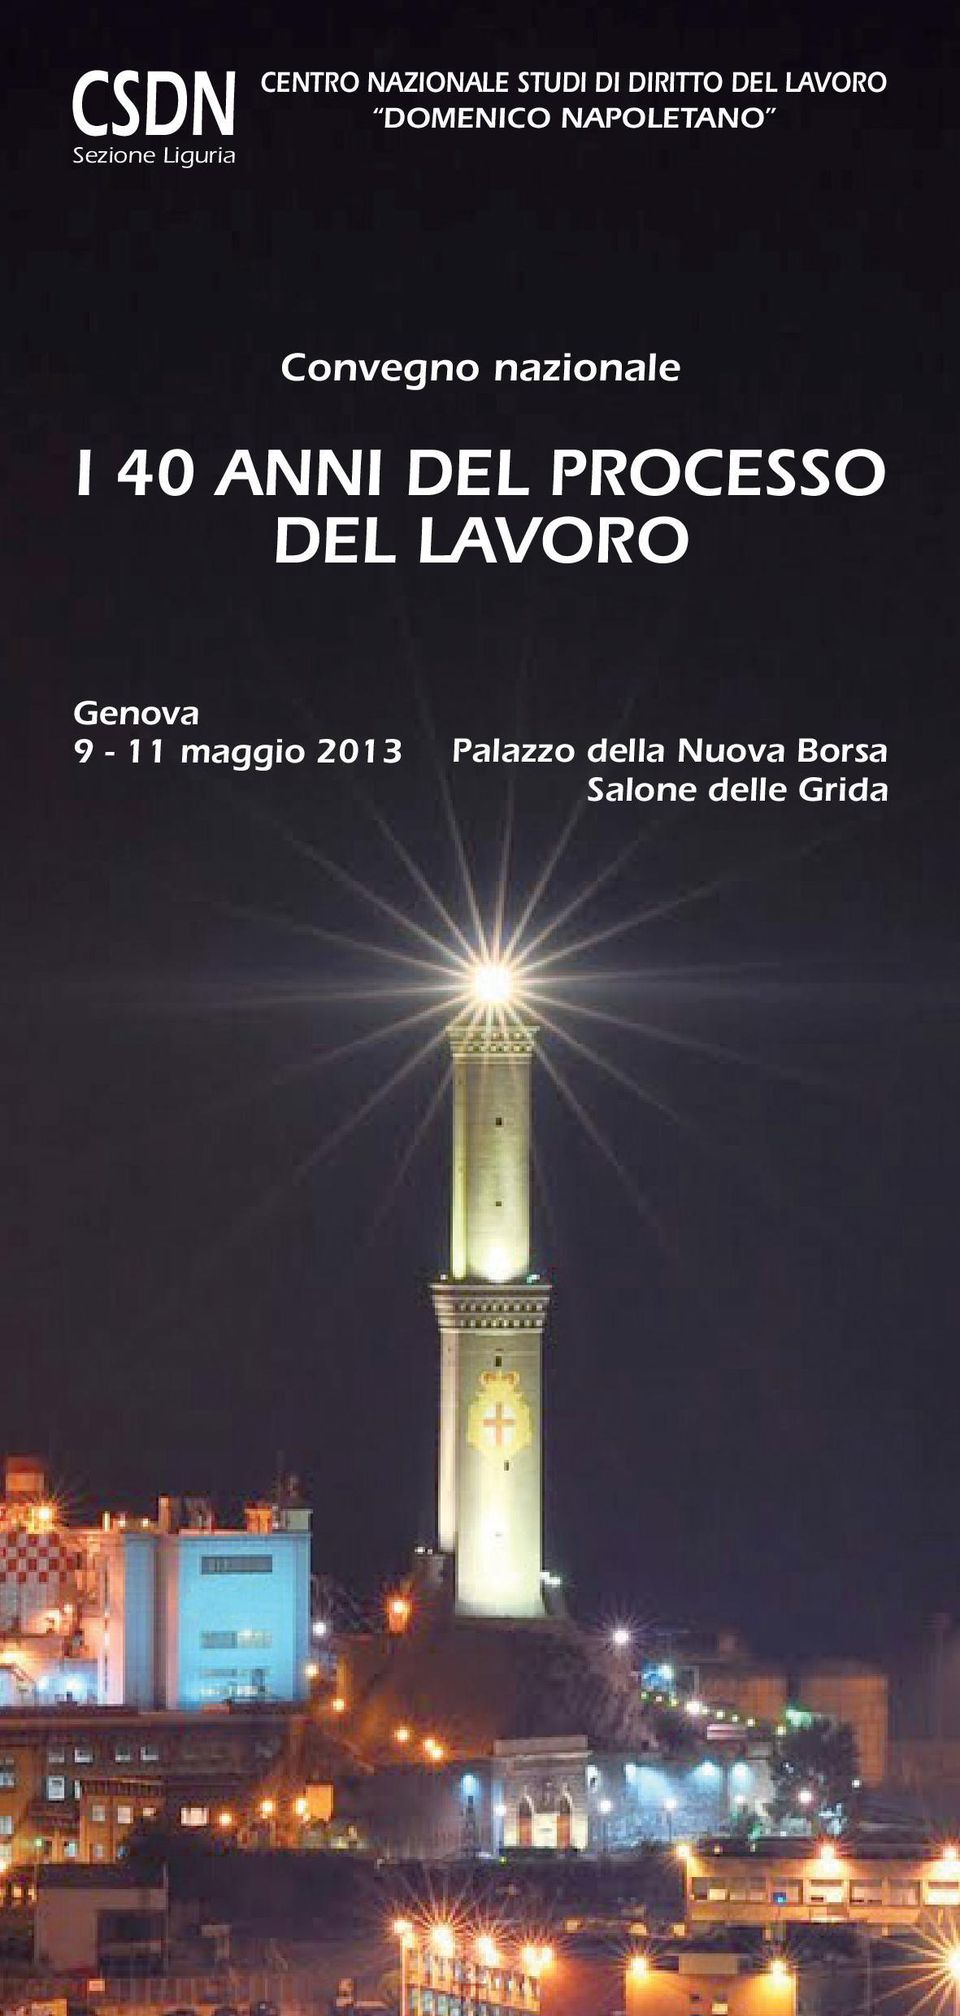 9-11 maggio 2013 Palazzo della